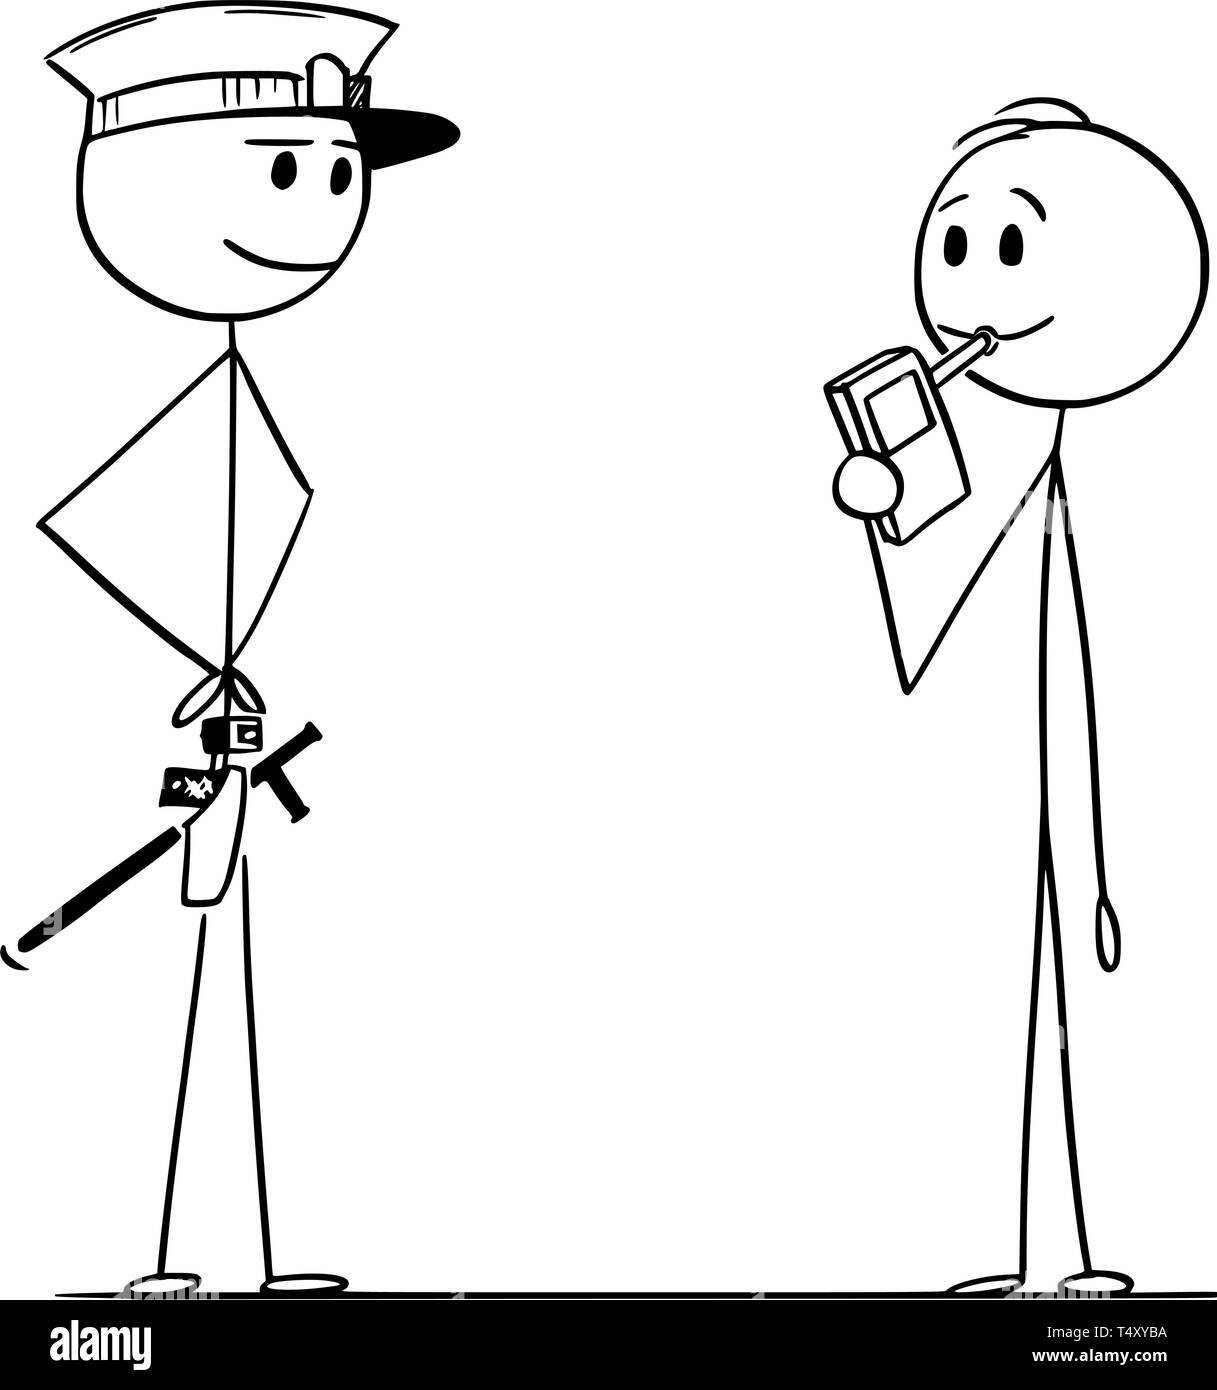 Cartoon stick disegno di figura illustrazione concettuale che di controllo del livello di alcool di uomo o driver. Illustrazione Vettoriale